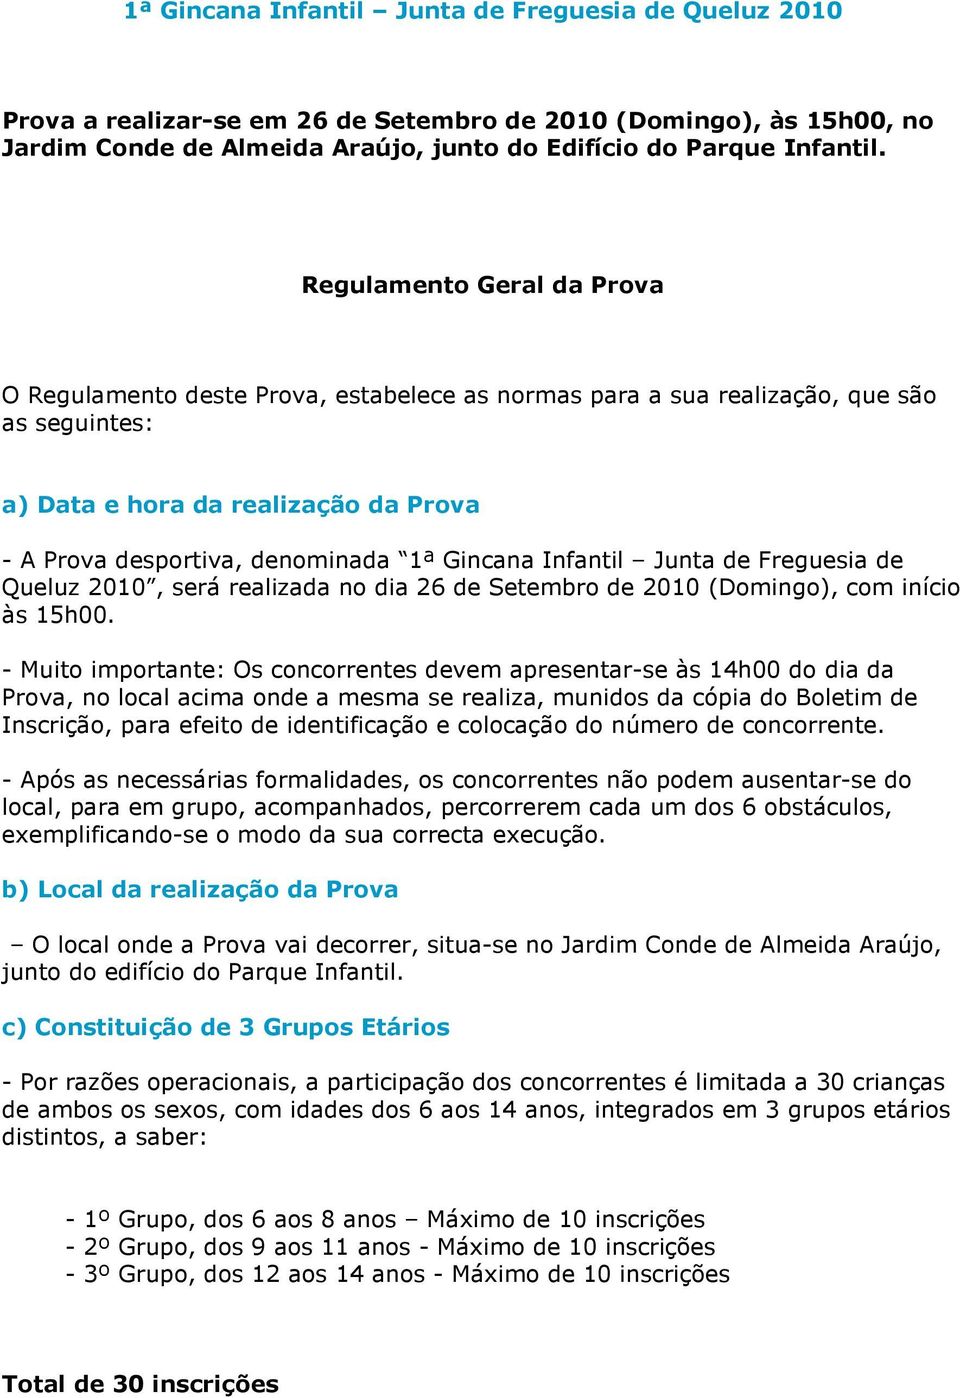 Gincana Infantil Junta de Freguesia de Queluz 2010, será realizada no dia 26 de Setembro de 2010 (Domingo), com início às 15h00.